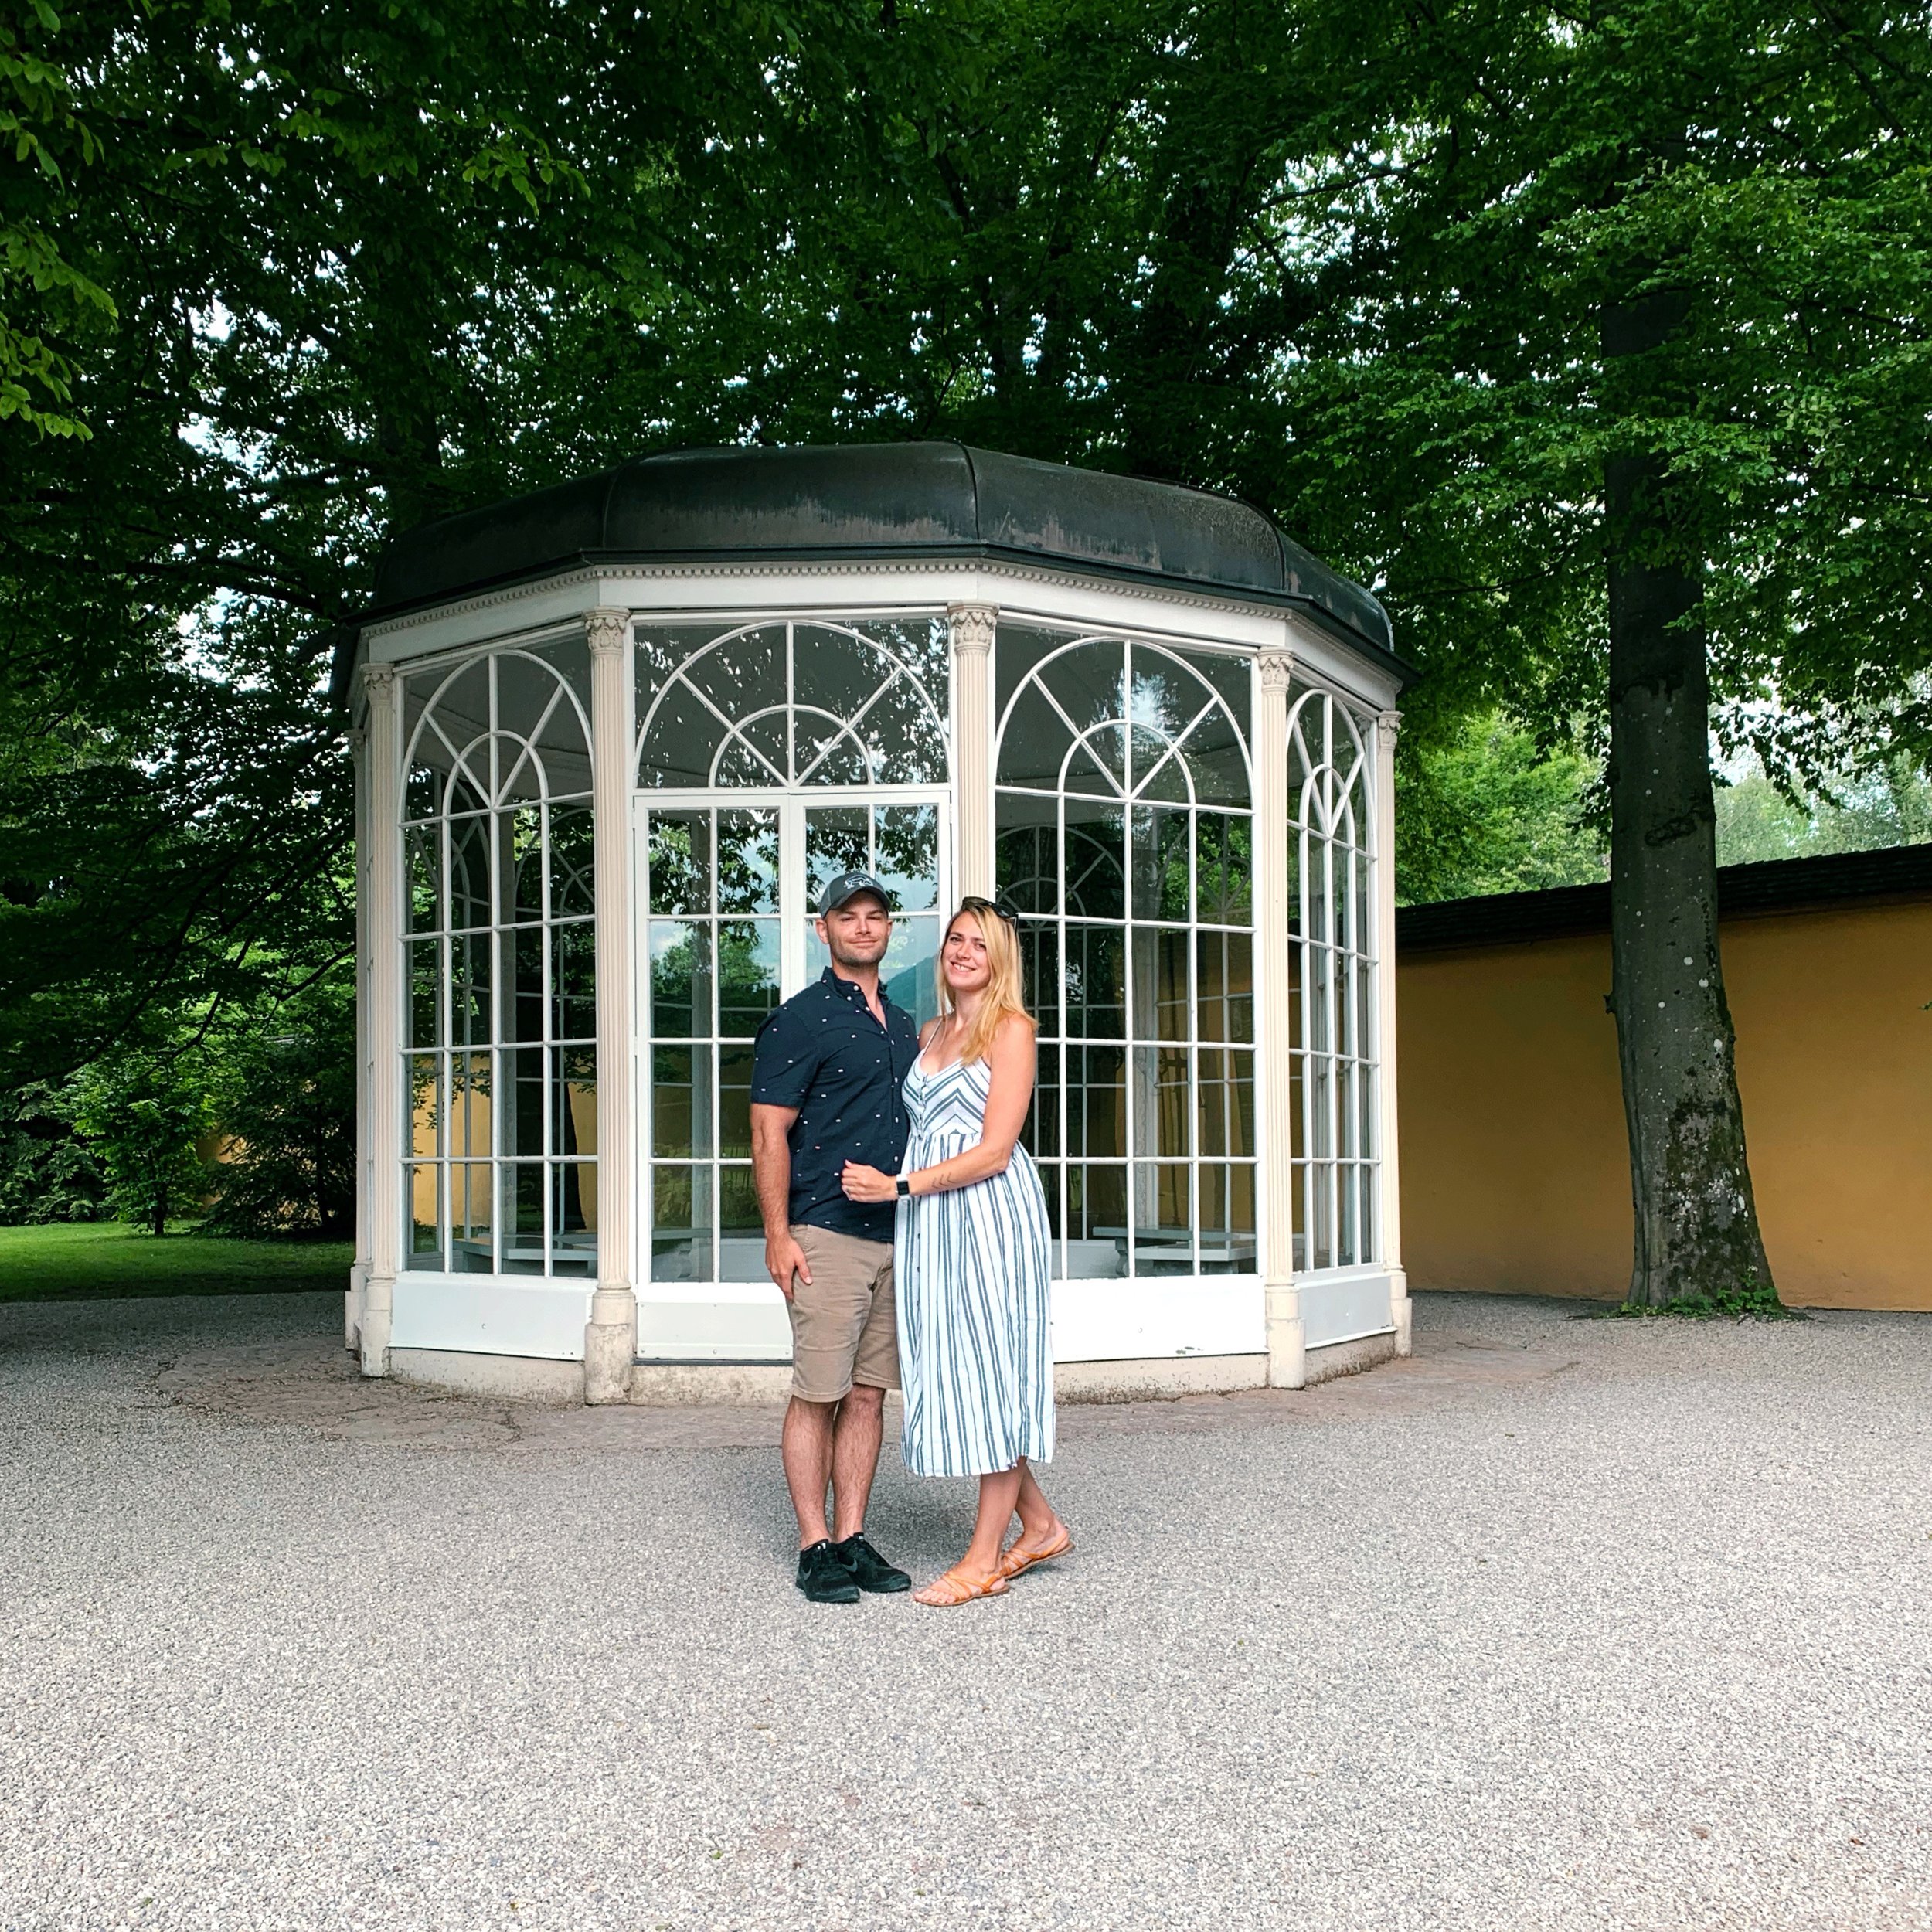 Hellbrunn Palace Park - Sound of Music Pavilion